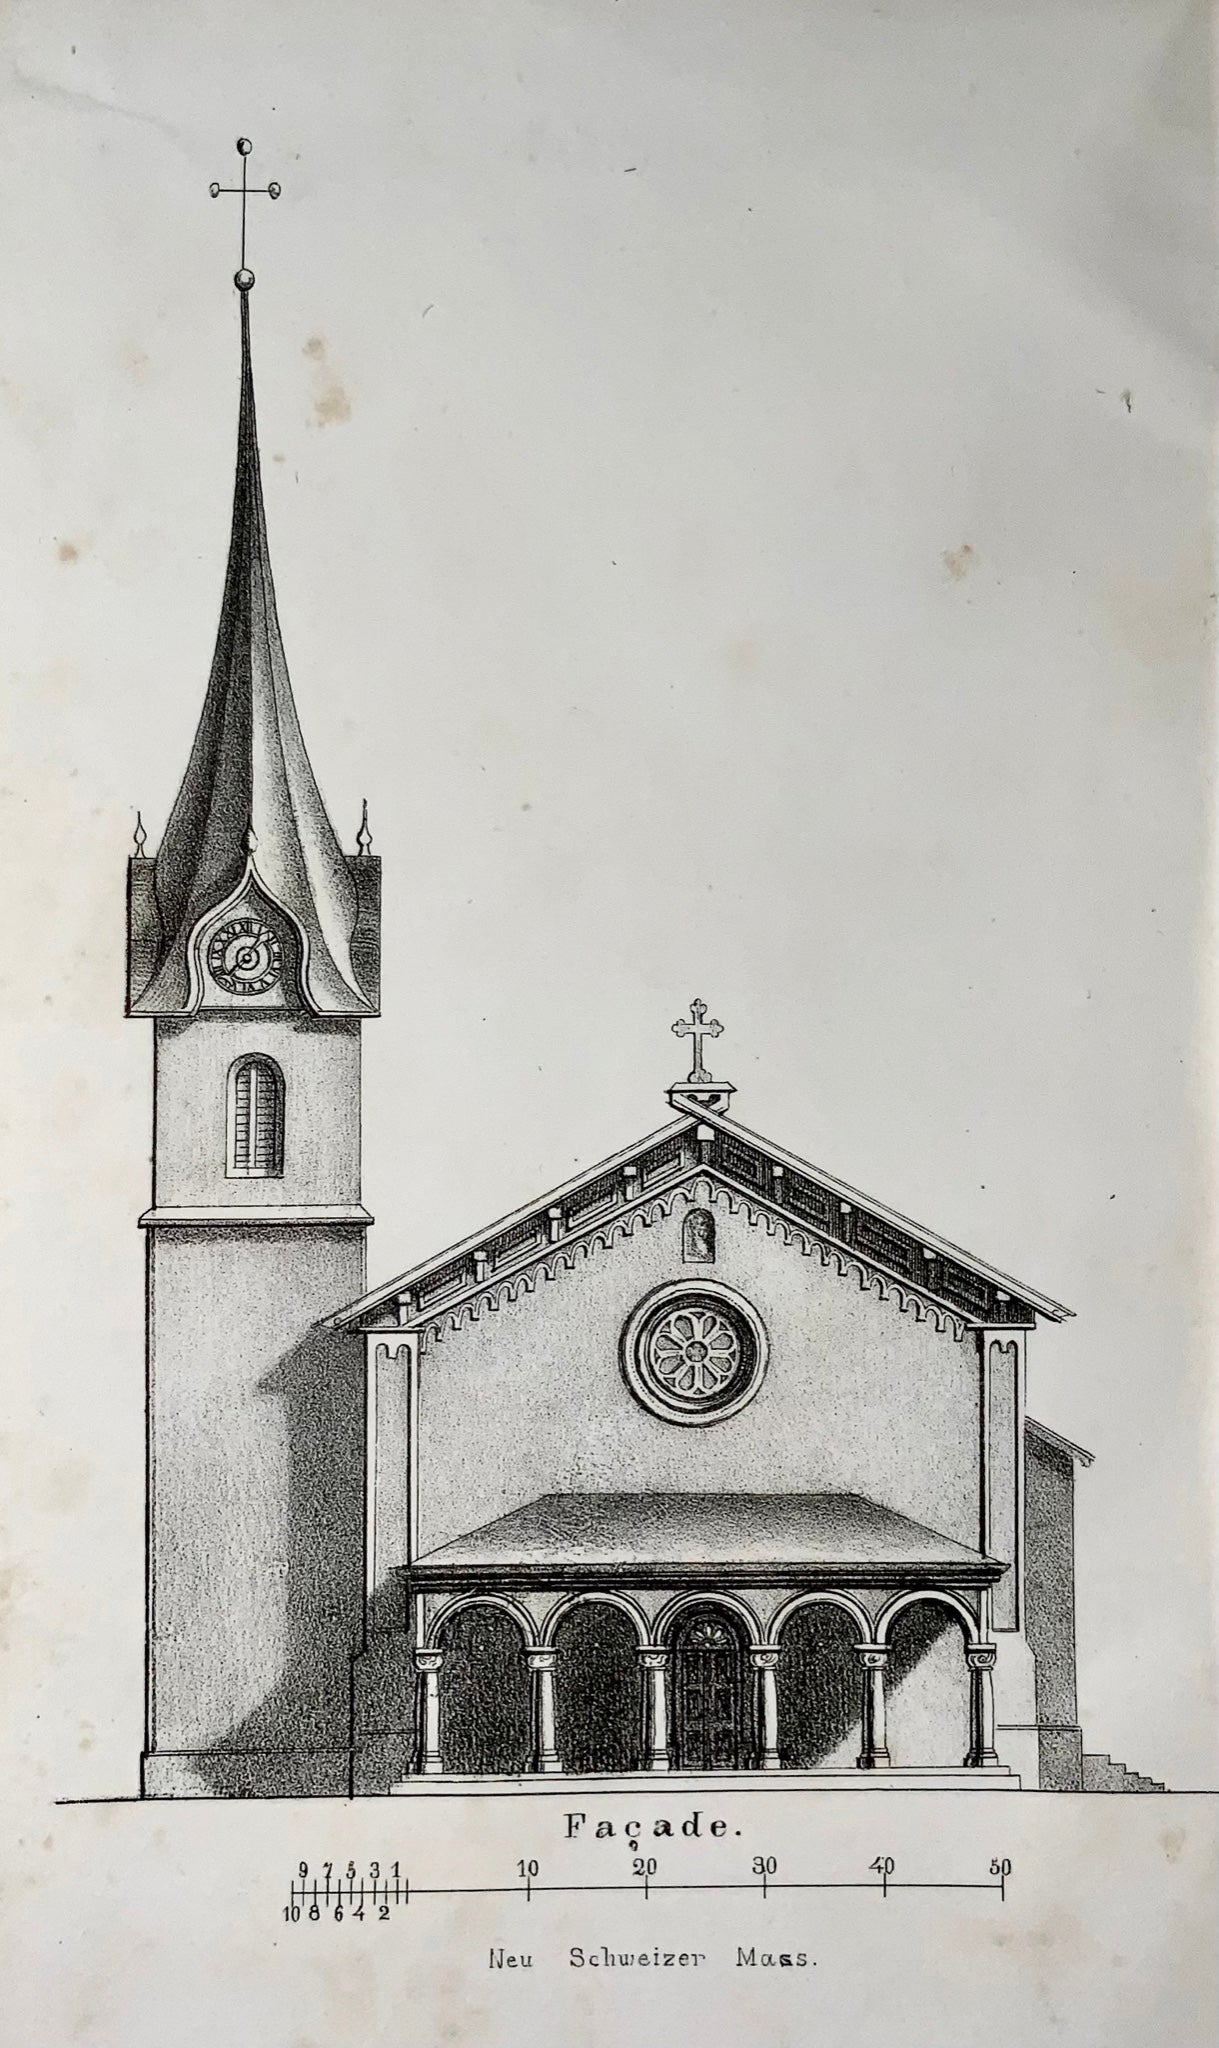 1852 Architecture d'églises rurales en Suisse. Christliche Baukunst, X. Herzog, livre